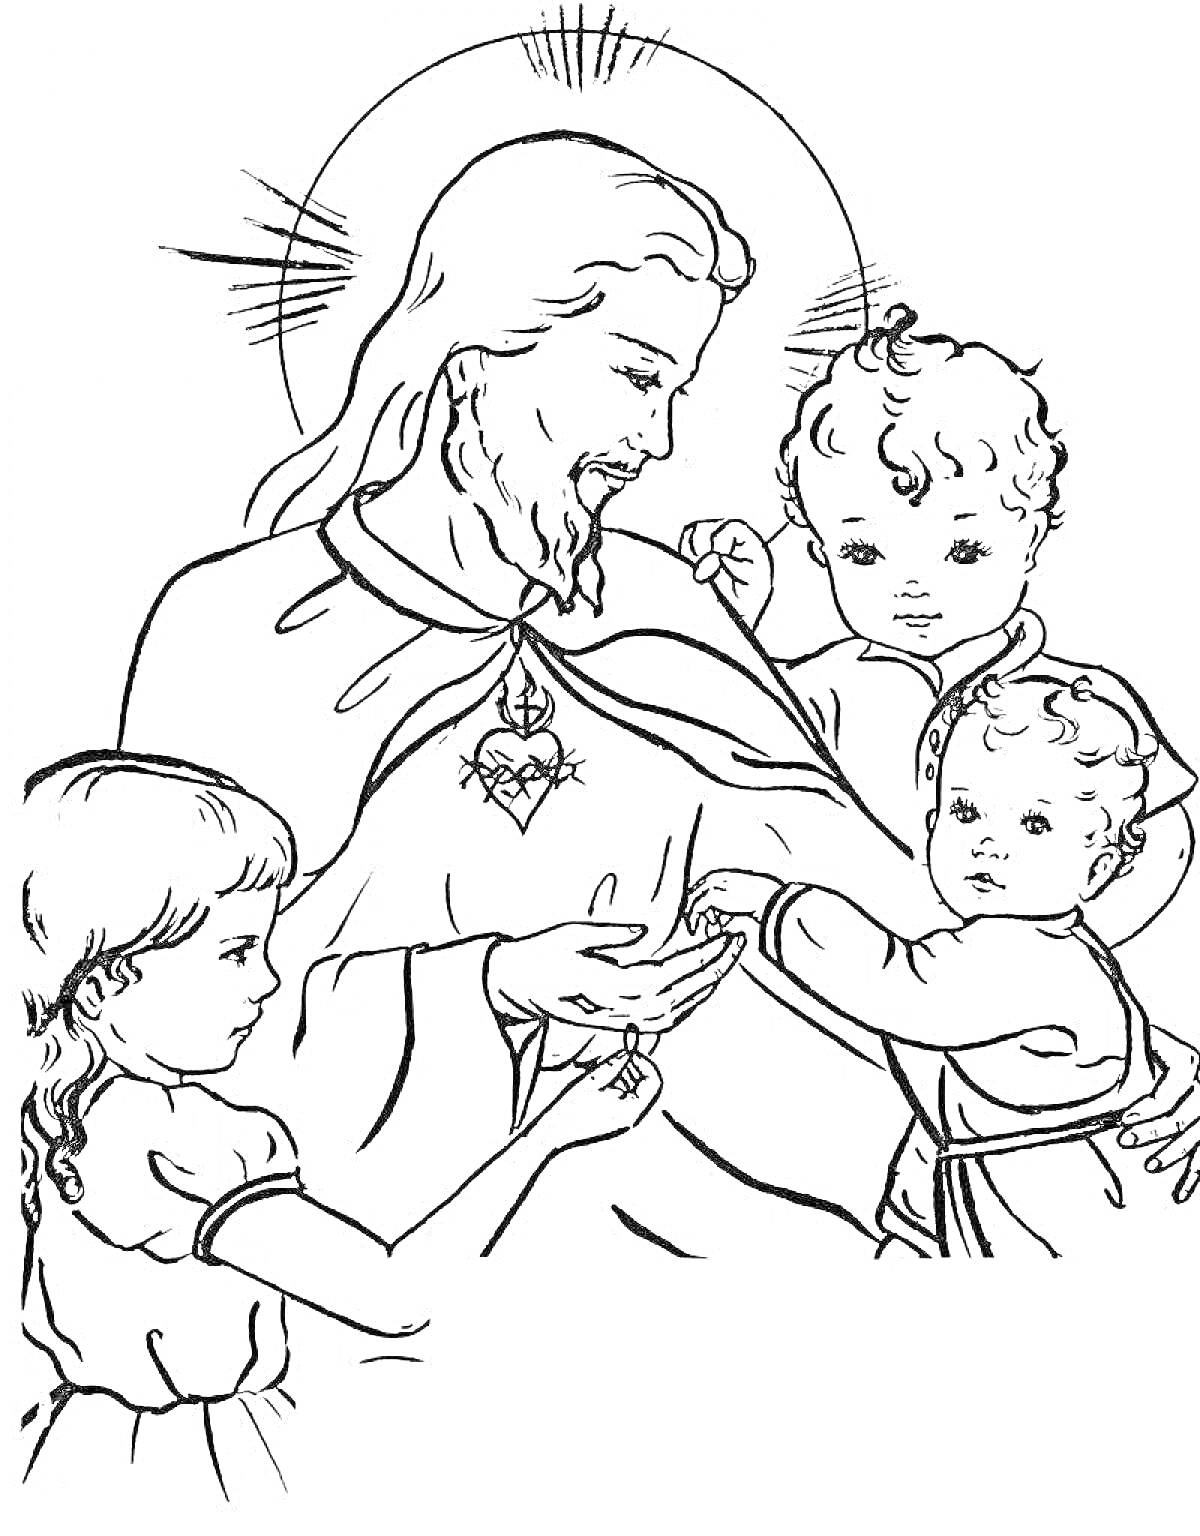 Раскраска Иисус с тремя детьми, наставляющий и благословляющий их, с ореолом на голове и сердцем на груди